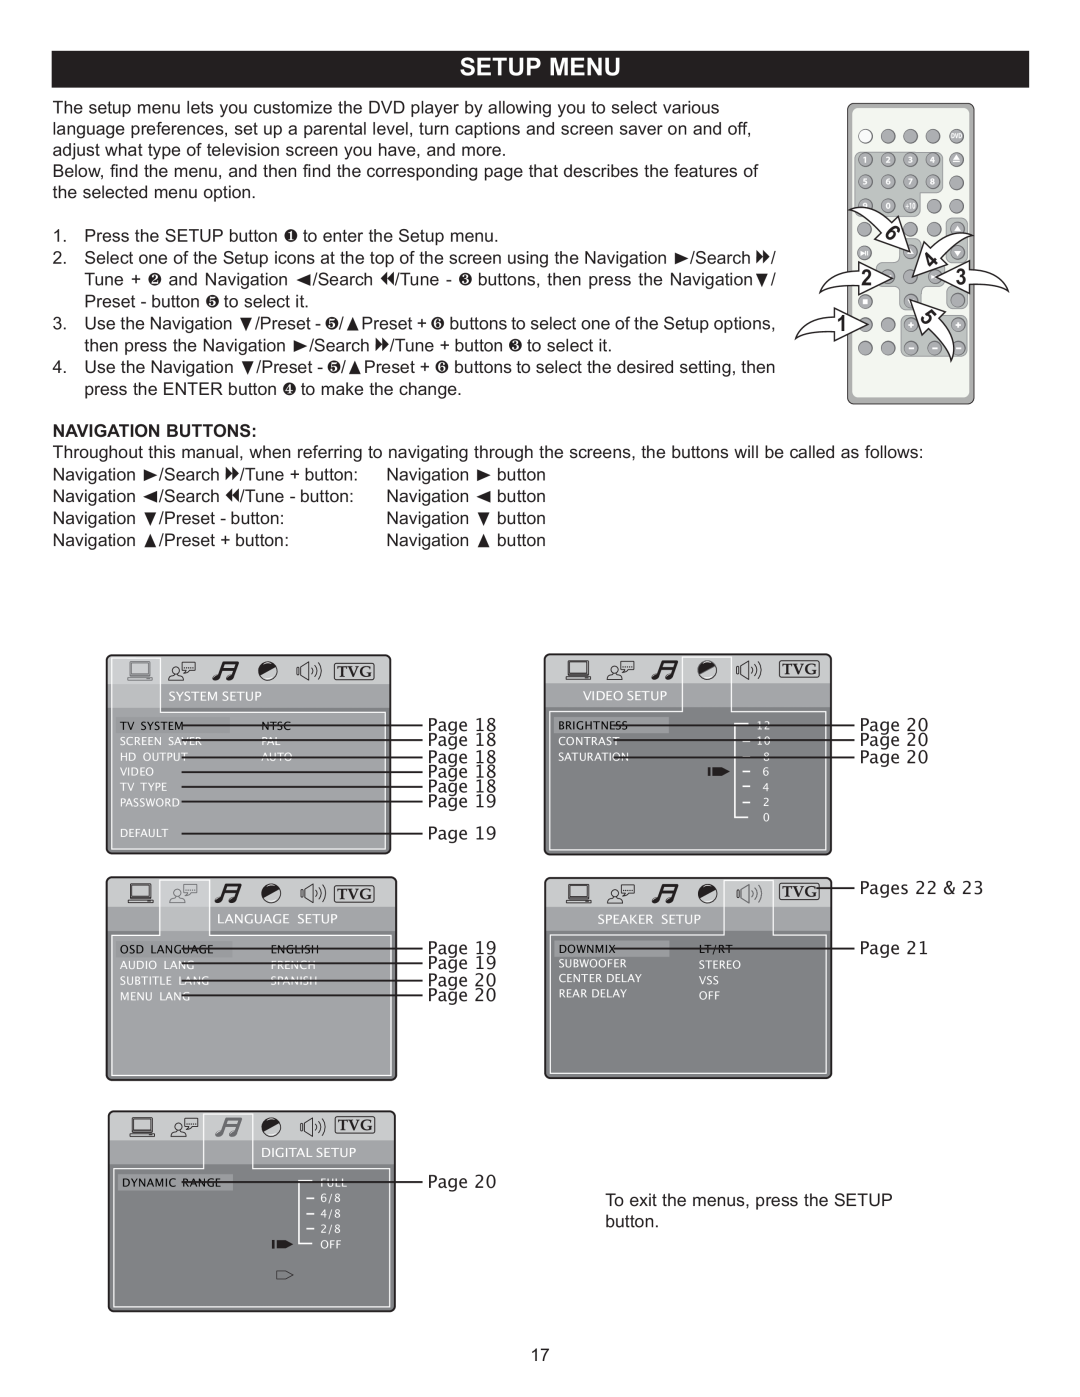 Memorex MIHT5005 manual Page Page Page Page Page Page Page Page Page Page, Pages 22 